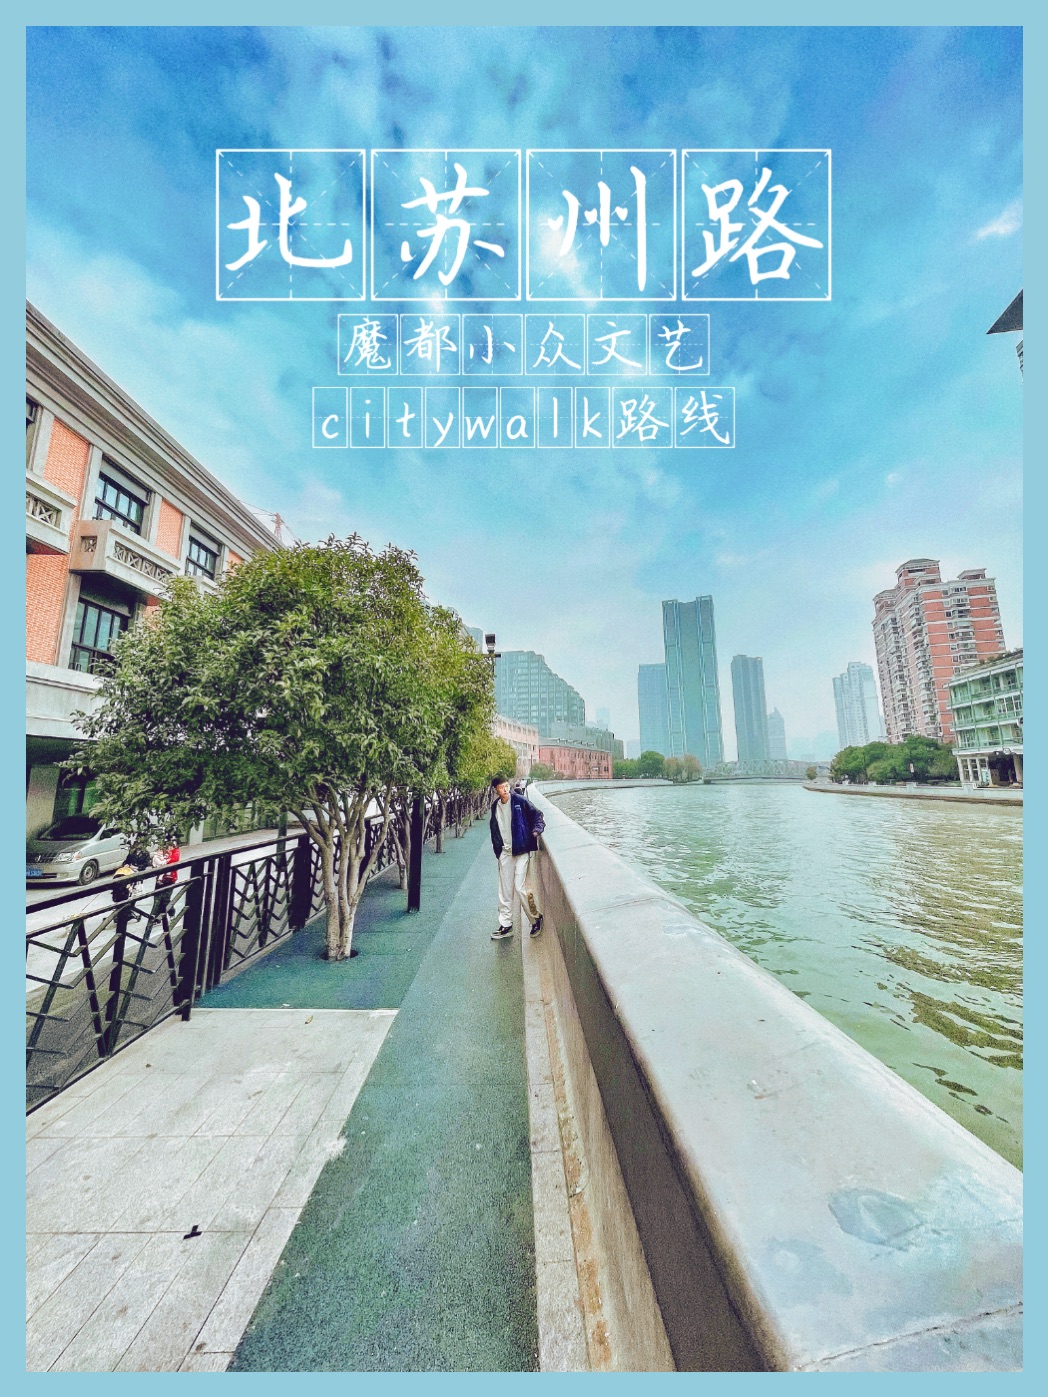 上海旅行📍北苏州路的城市漫步🚶魔都小众文艺Citywalk